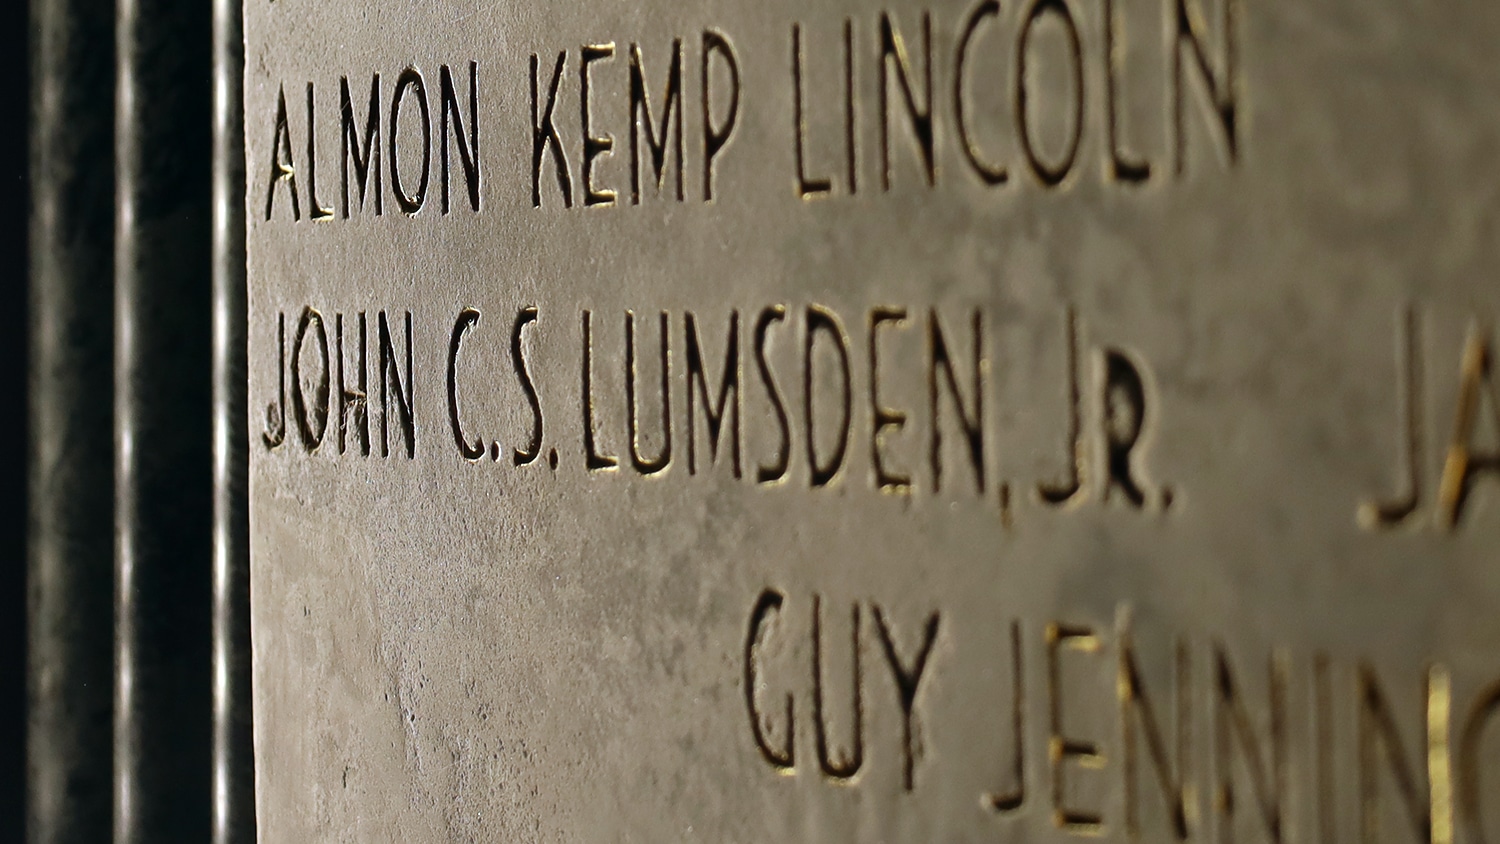 The name John C.S. Lumsden Jr., inscribed in granite